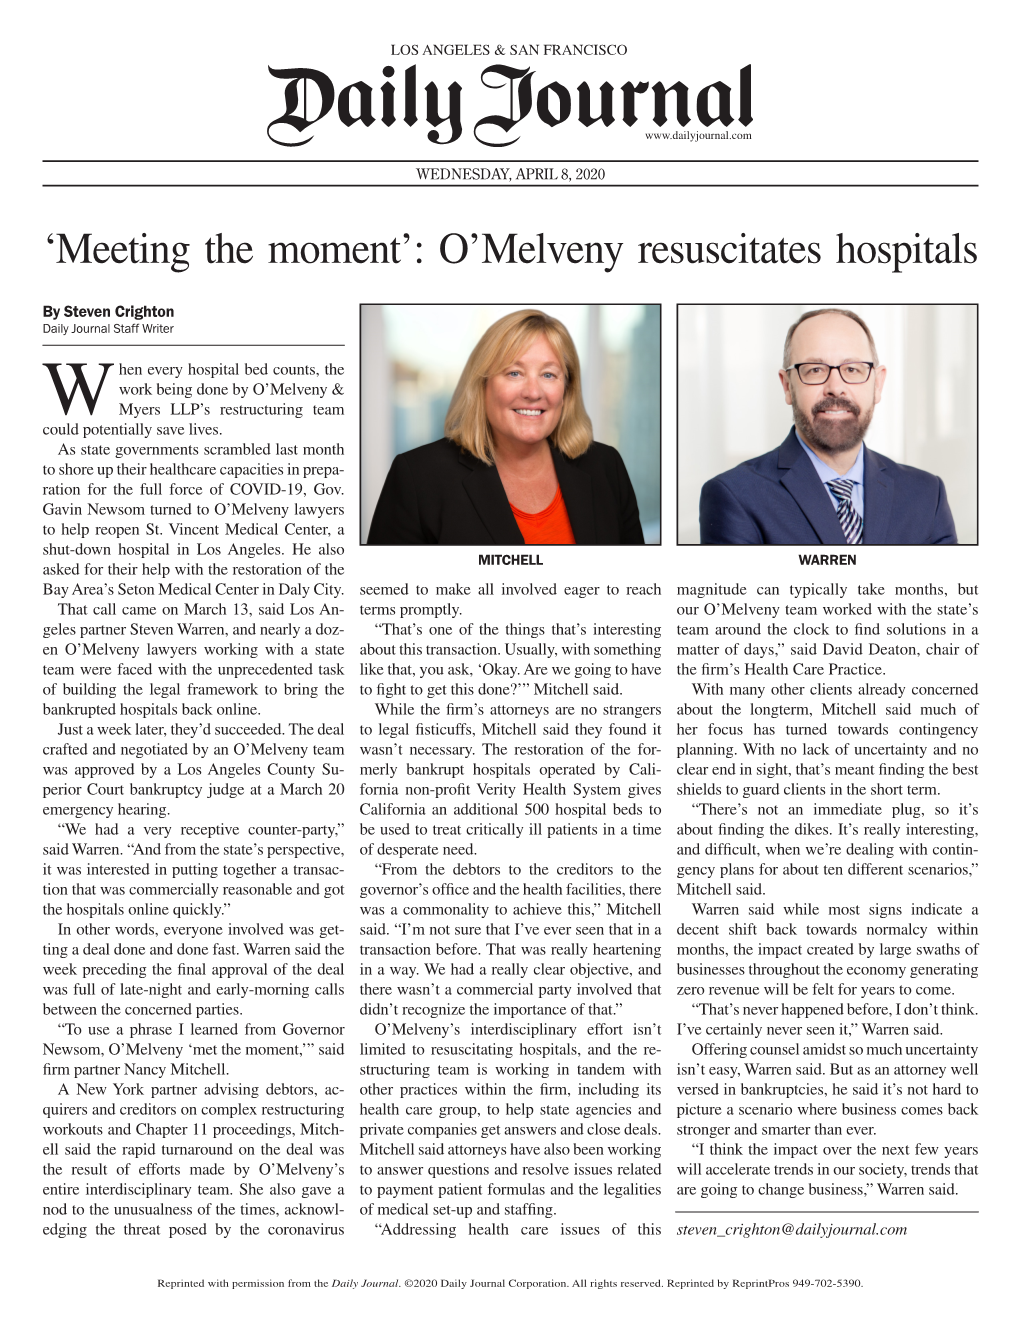 'Meeting the Moment': O'melveny Resuscitates Hospitals